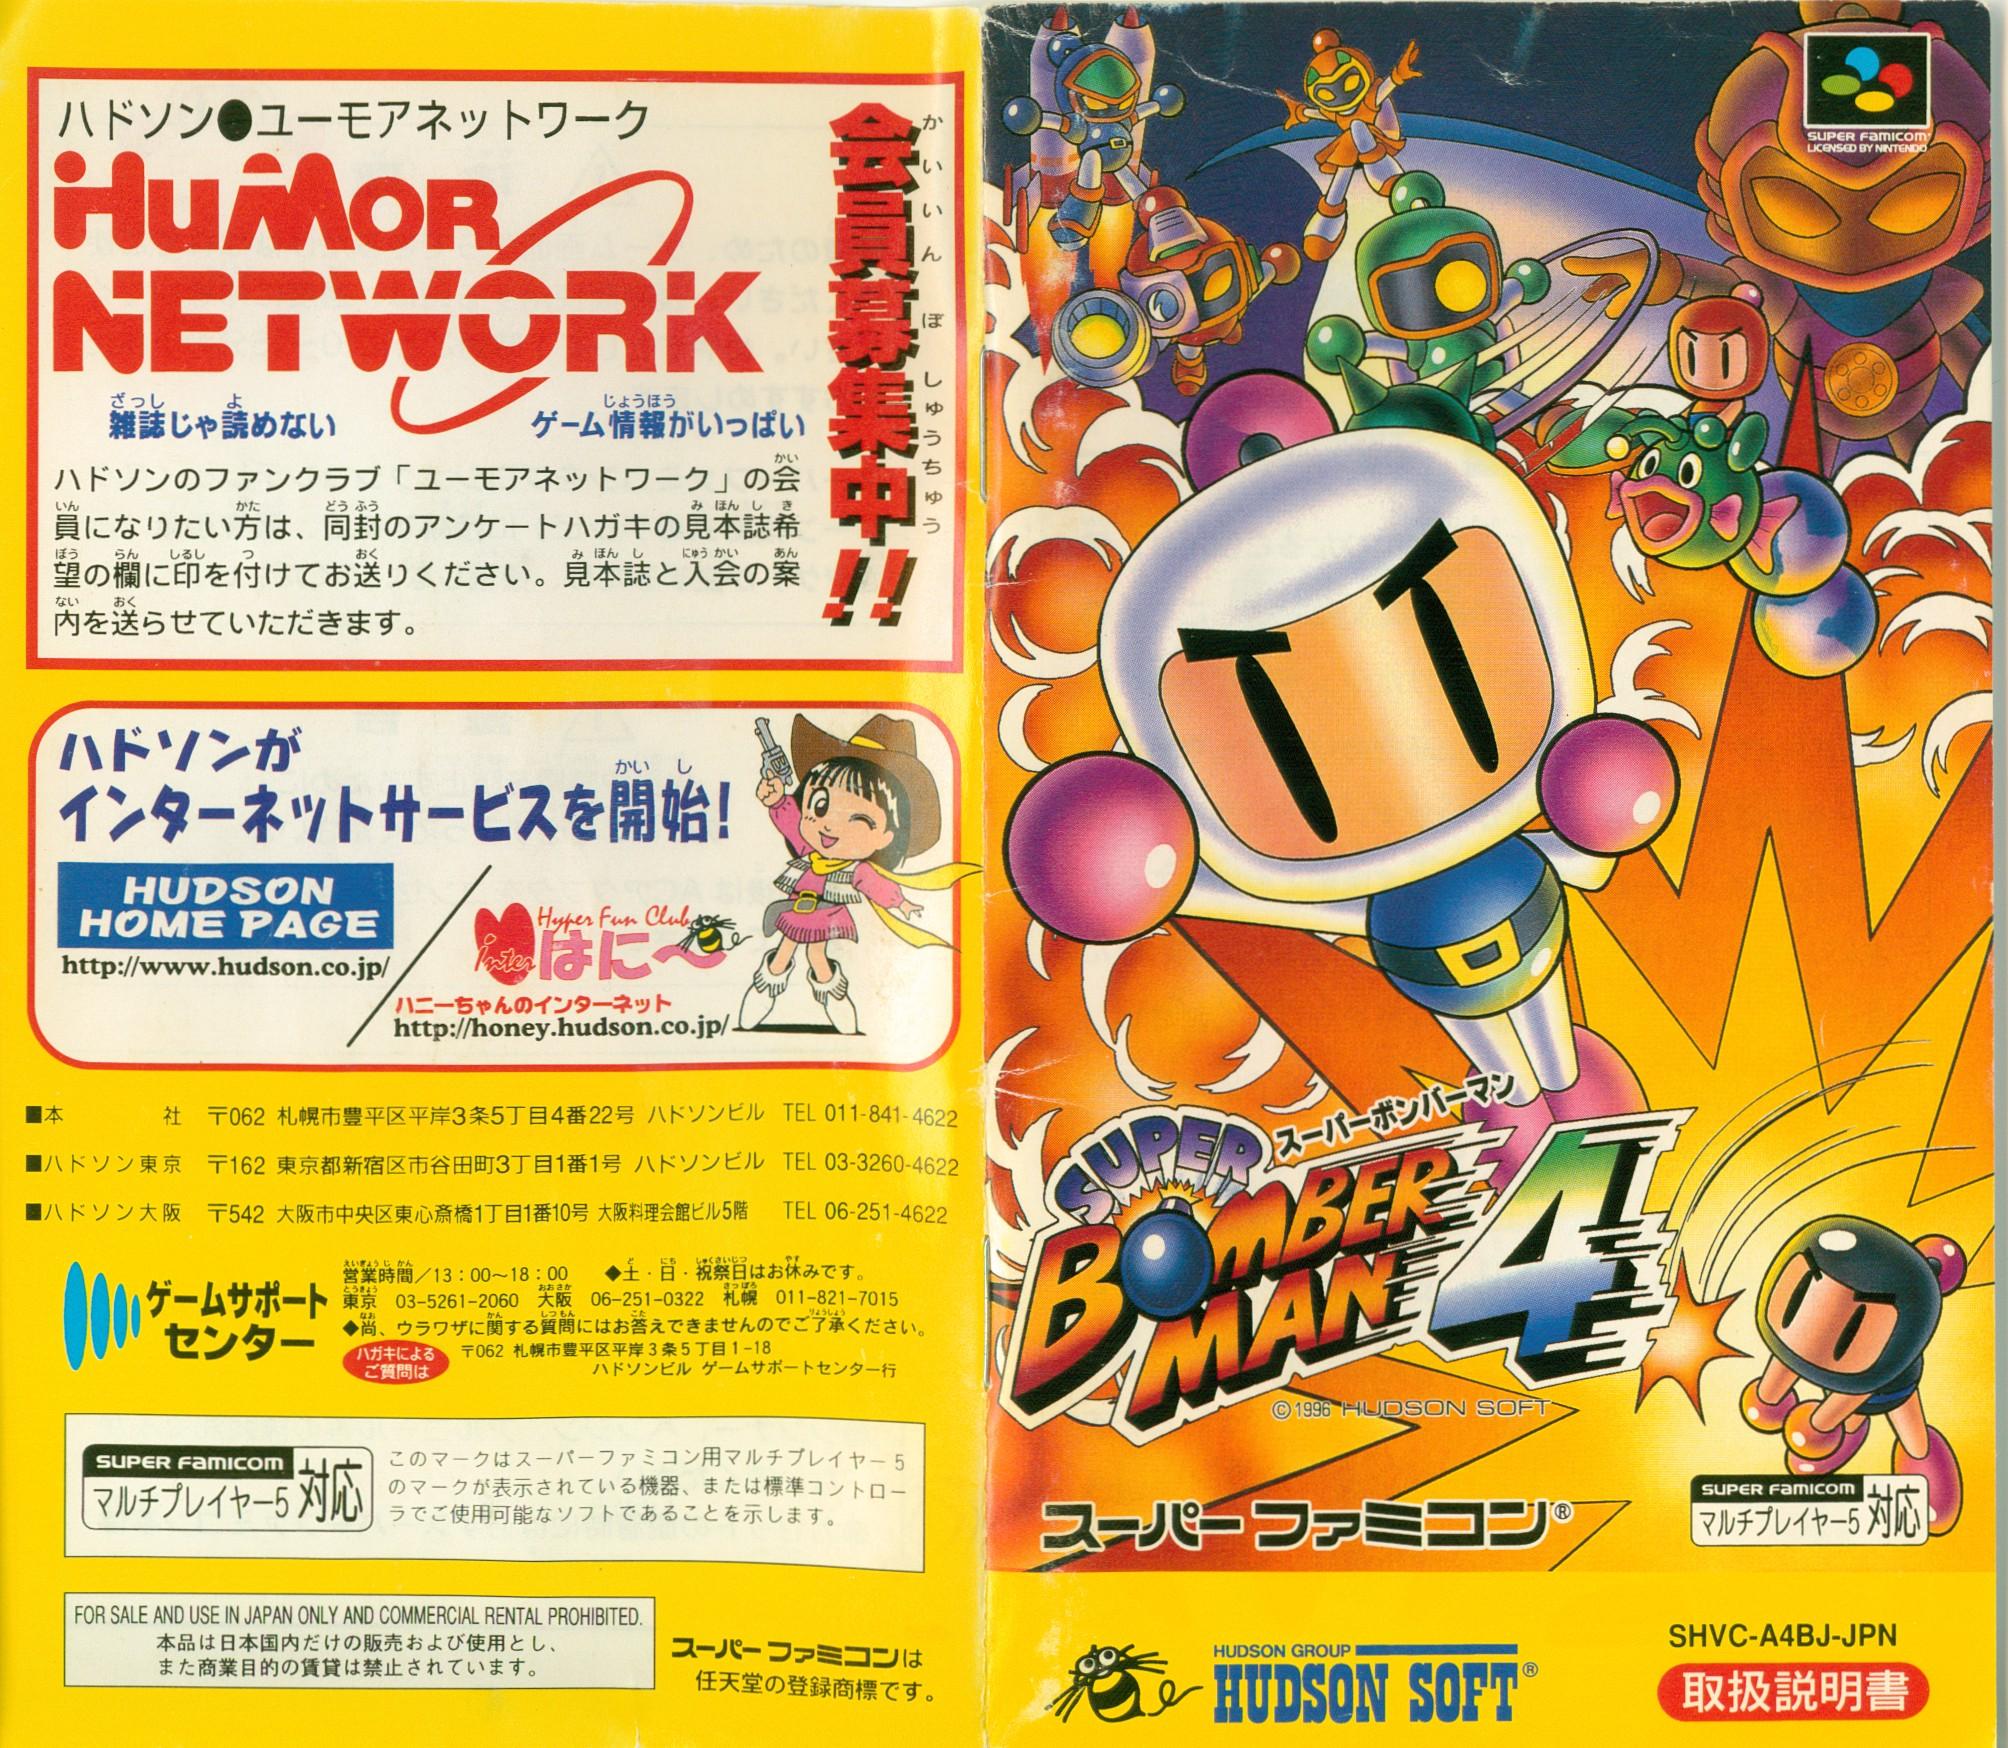 Ending for Super Bomberman 4(Super Nes / Super Famicom)